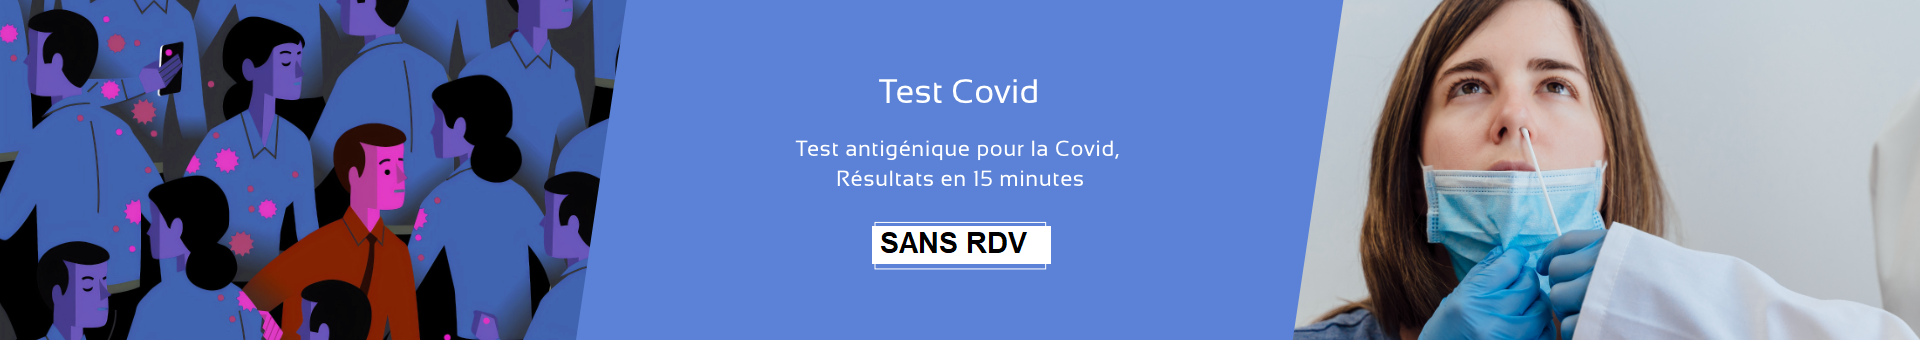 Tests antigéniques sans RDV